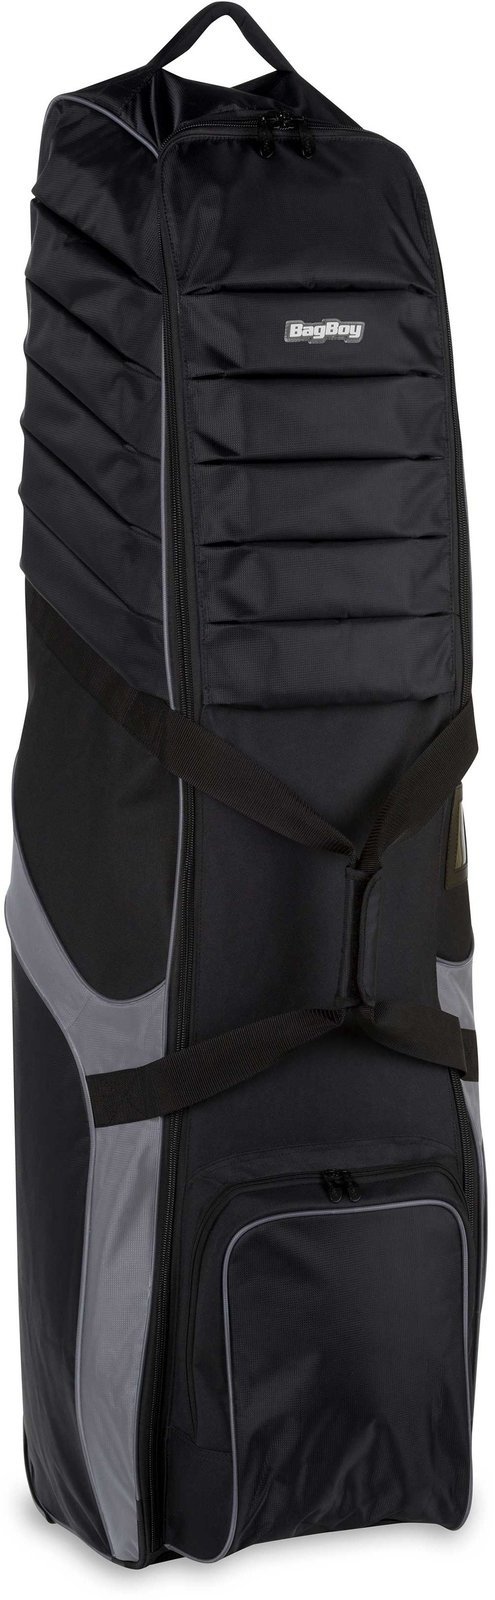 Τσάντα Ταξιδιού BagBoy T-750 Travel Cover Black/Charcoal